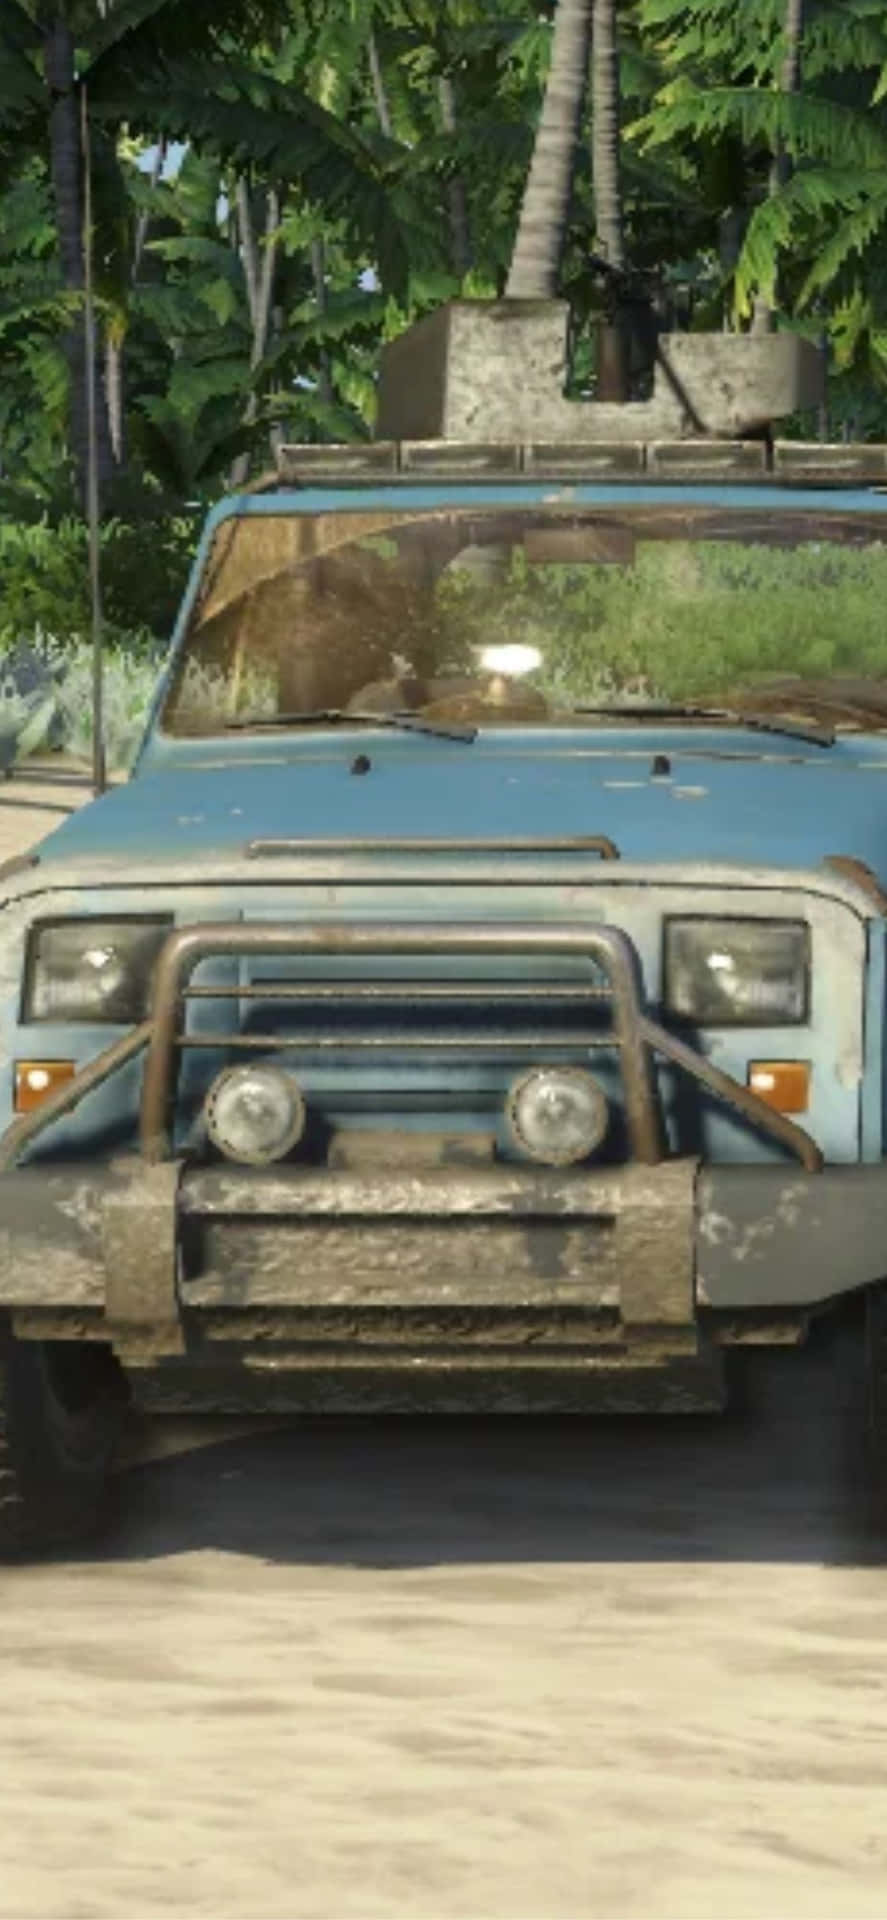 Iphonex Bakgrundsbild: Teknisk Lastbil Från Far Cry 3.